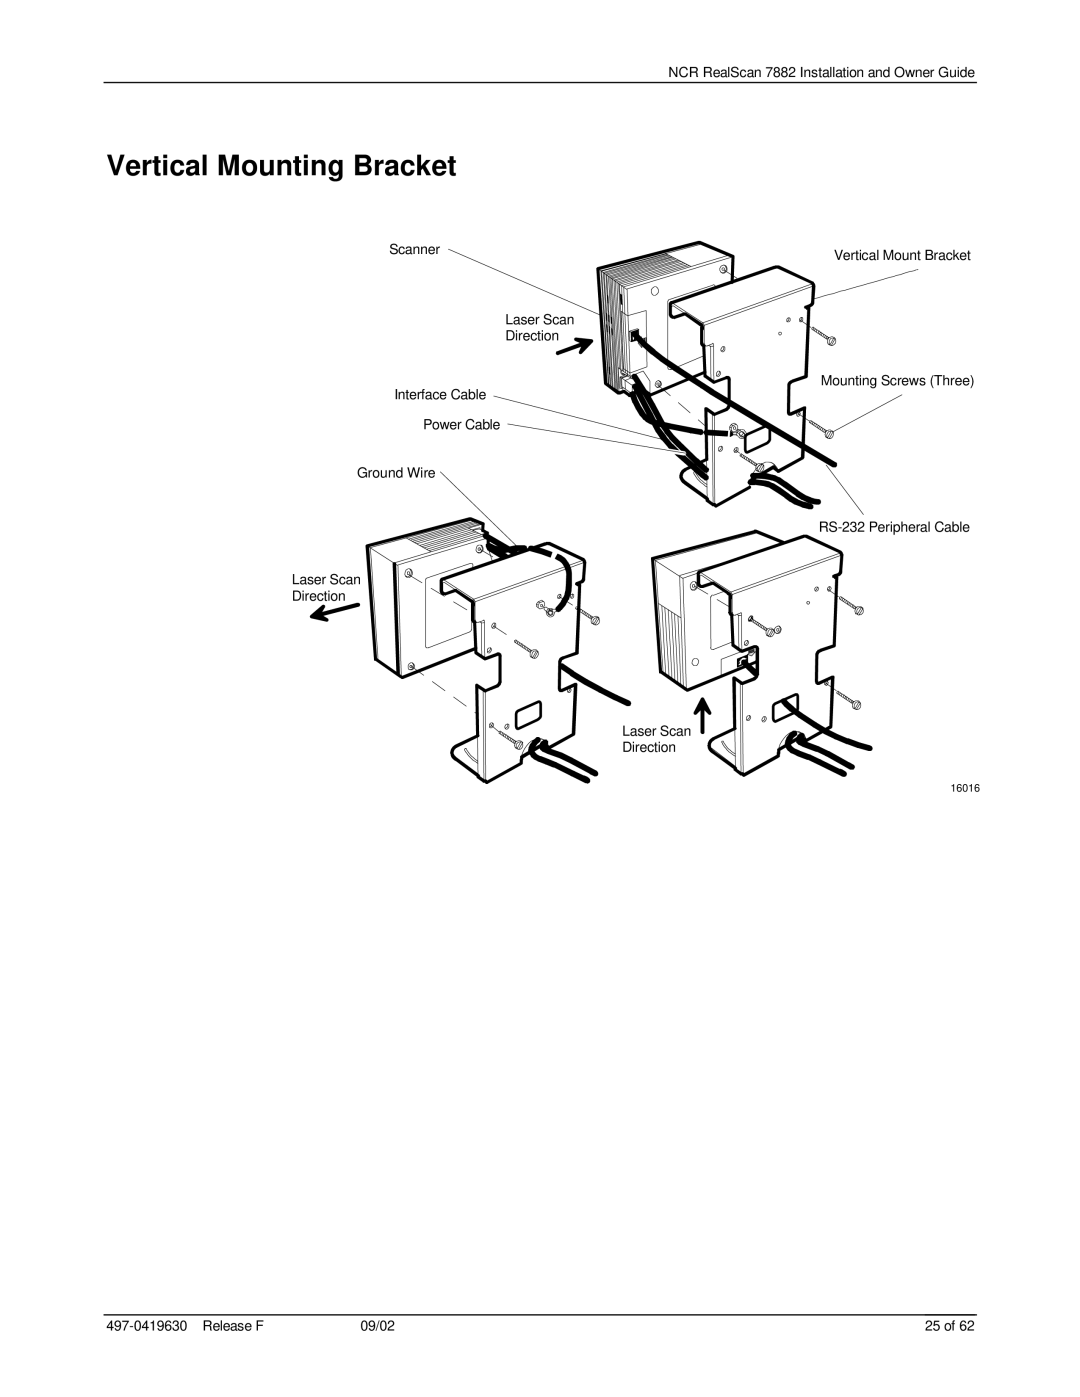 NCR 7882 manual Vertical Mounting Bracket, 25 of, 16016 